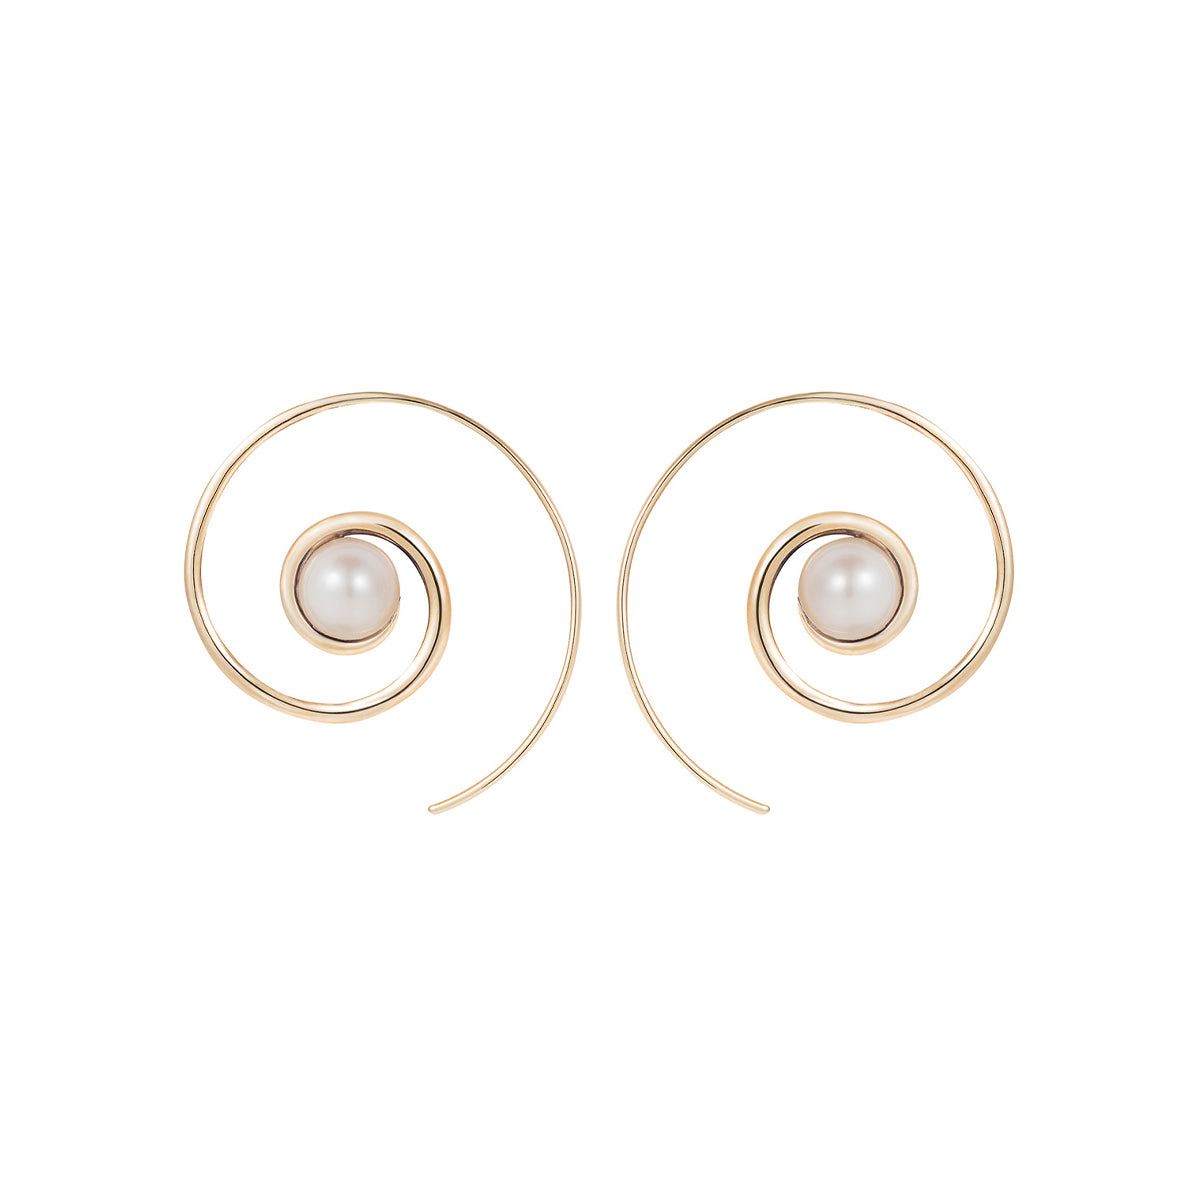 Noor Fares pearl spiral moon earrings